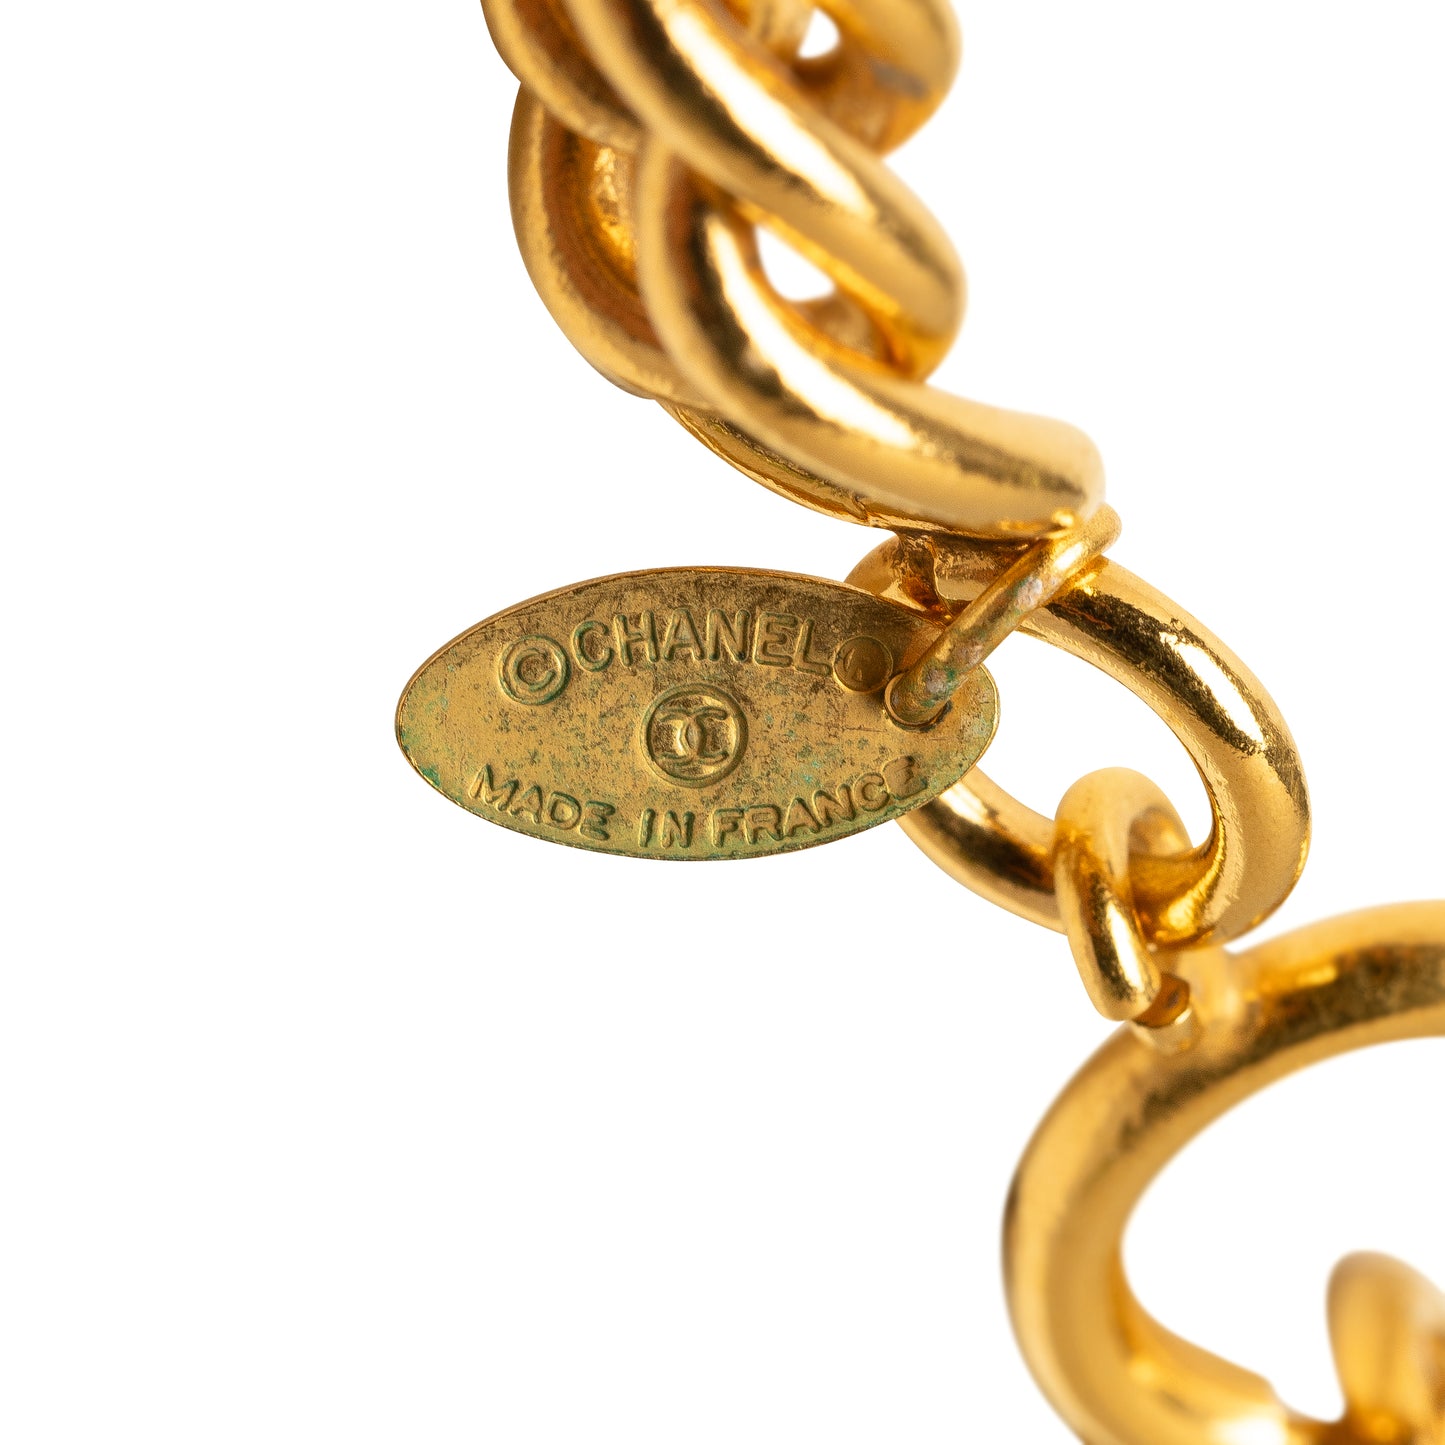 CC Medallion Pendant Necklace Gold - Gaby Paris